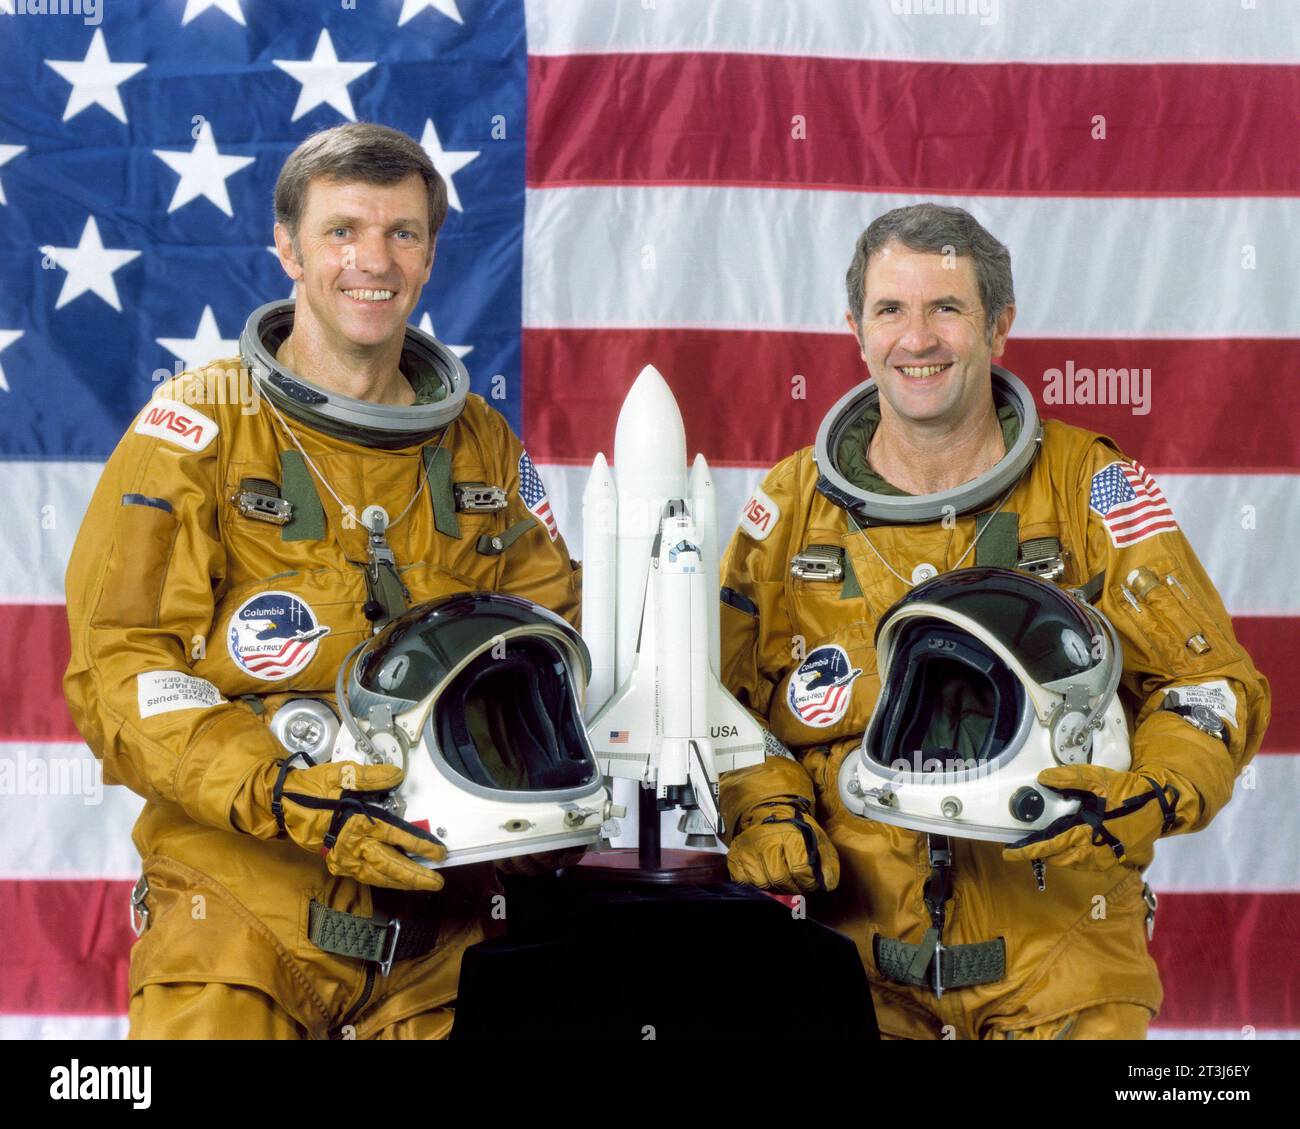 STS-2 Prime Crew qui se composait du commandant Joe Engle et du pilote Richard vraiment debout devant un drapeau américain tenant leurs casques avec un modèle de navette sur la table devant eux. Banque D'Images